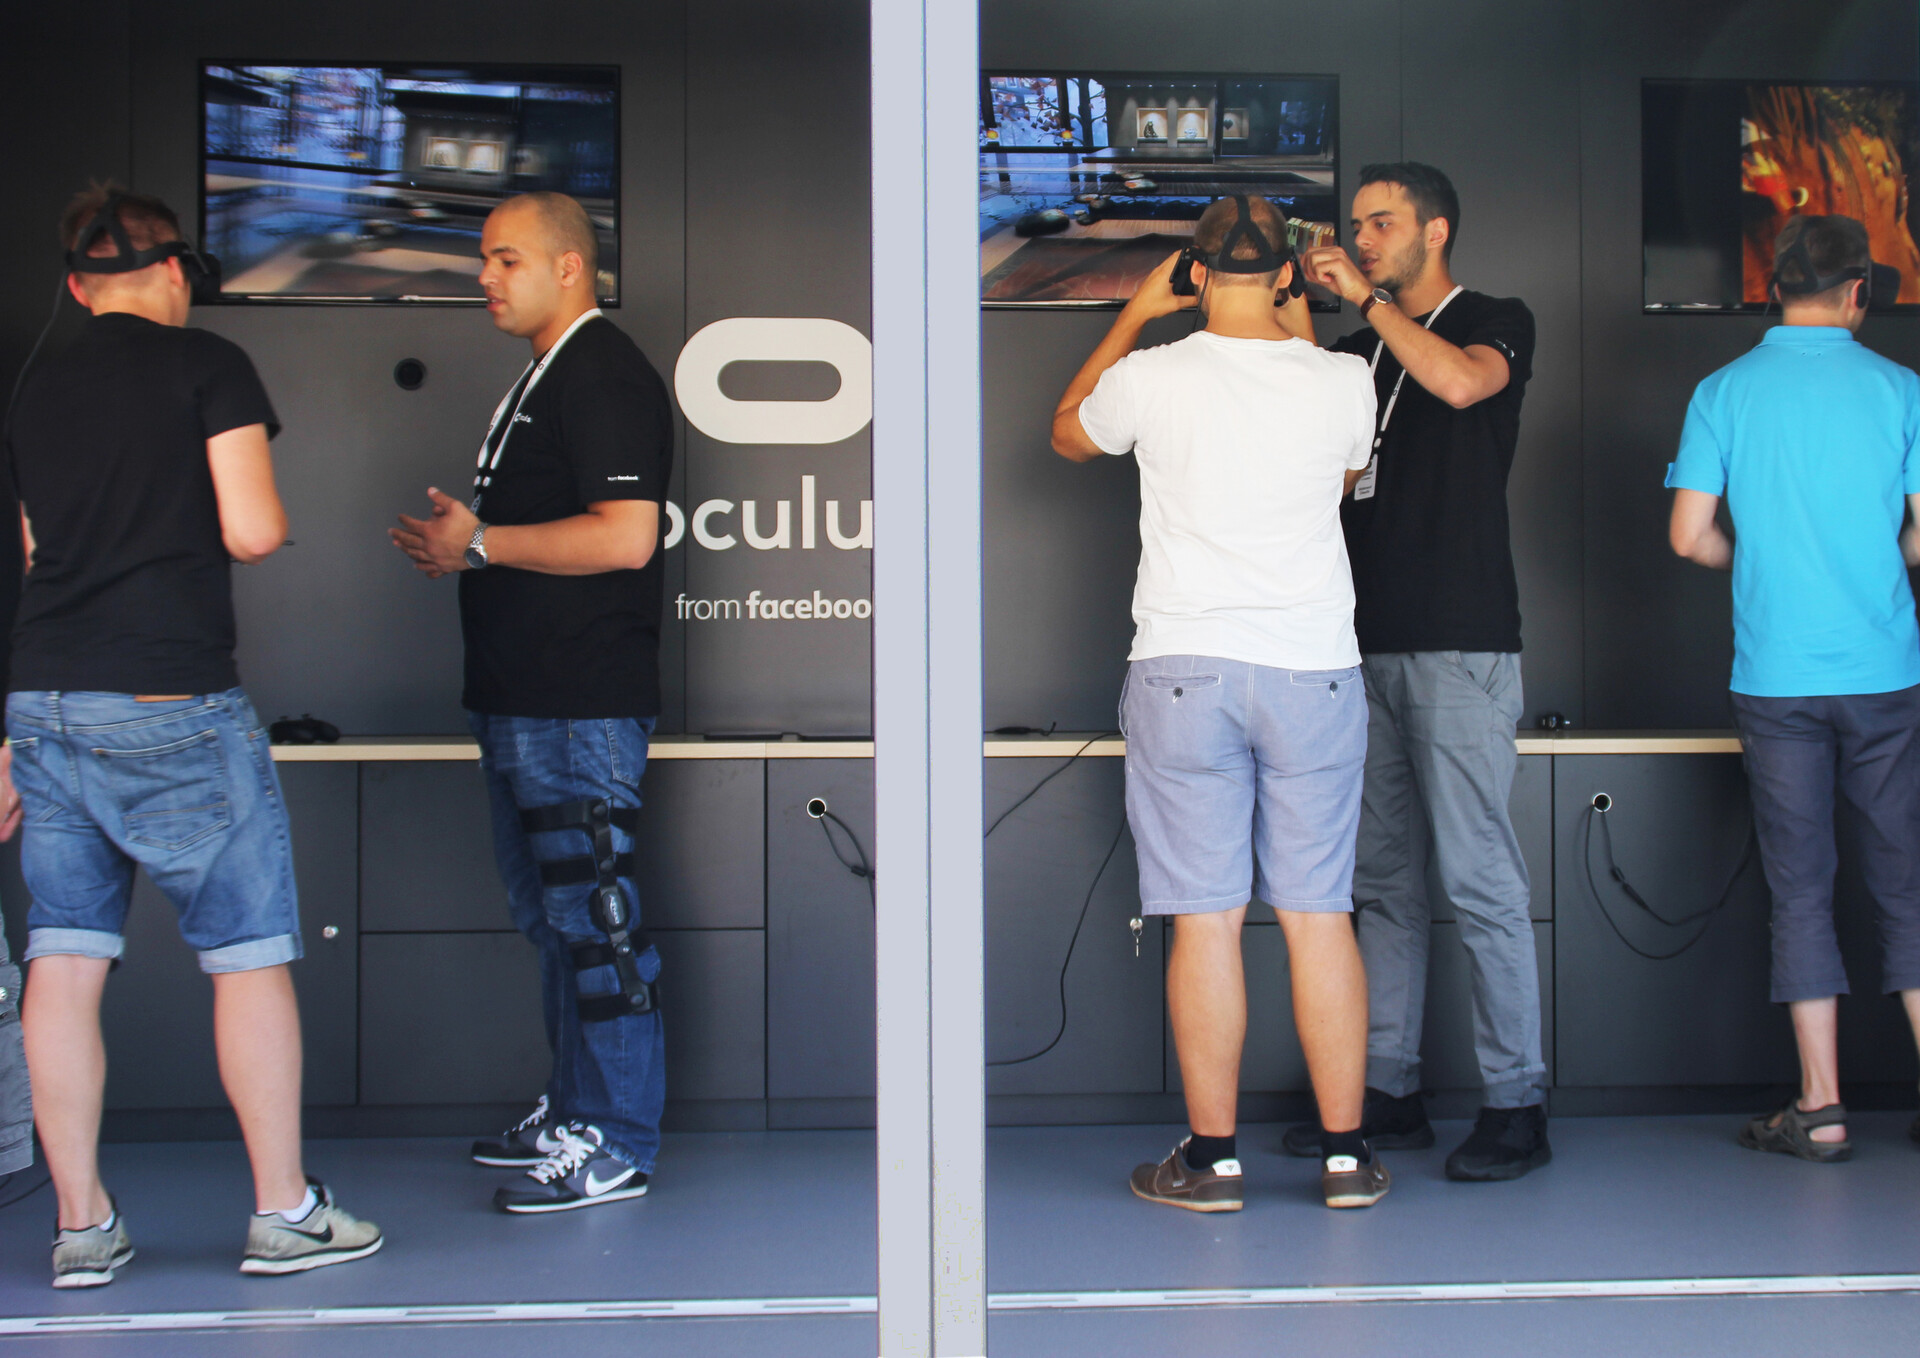 oculus-showtruck-3-tester.jpg